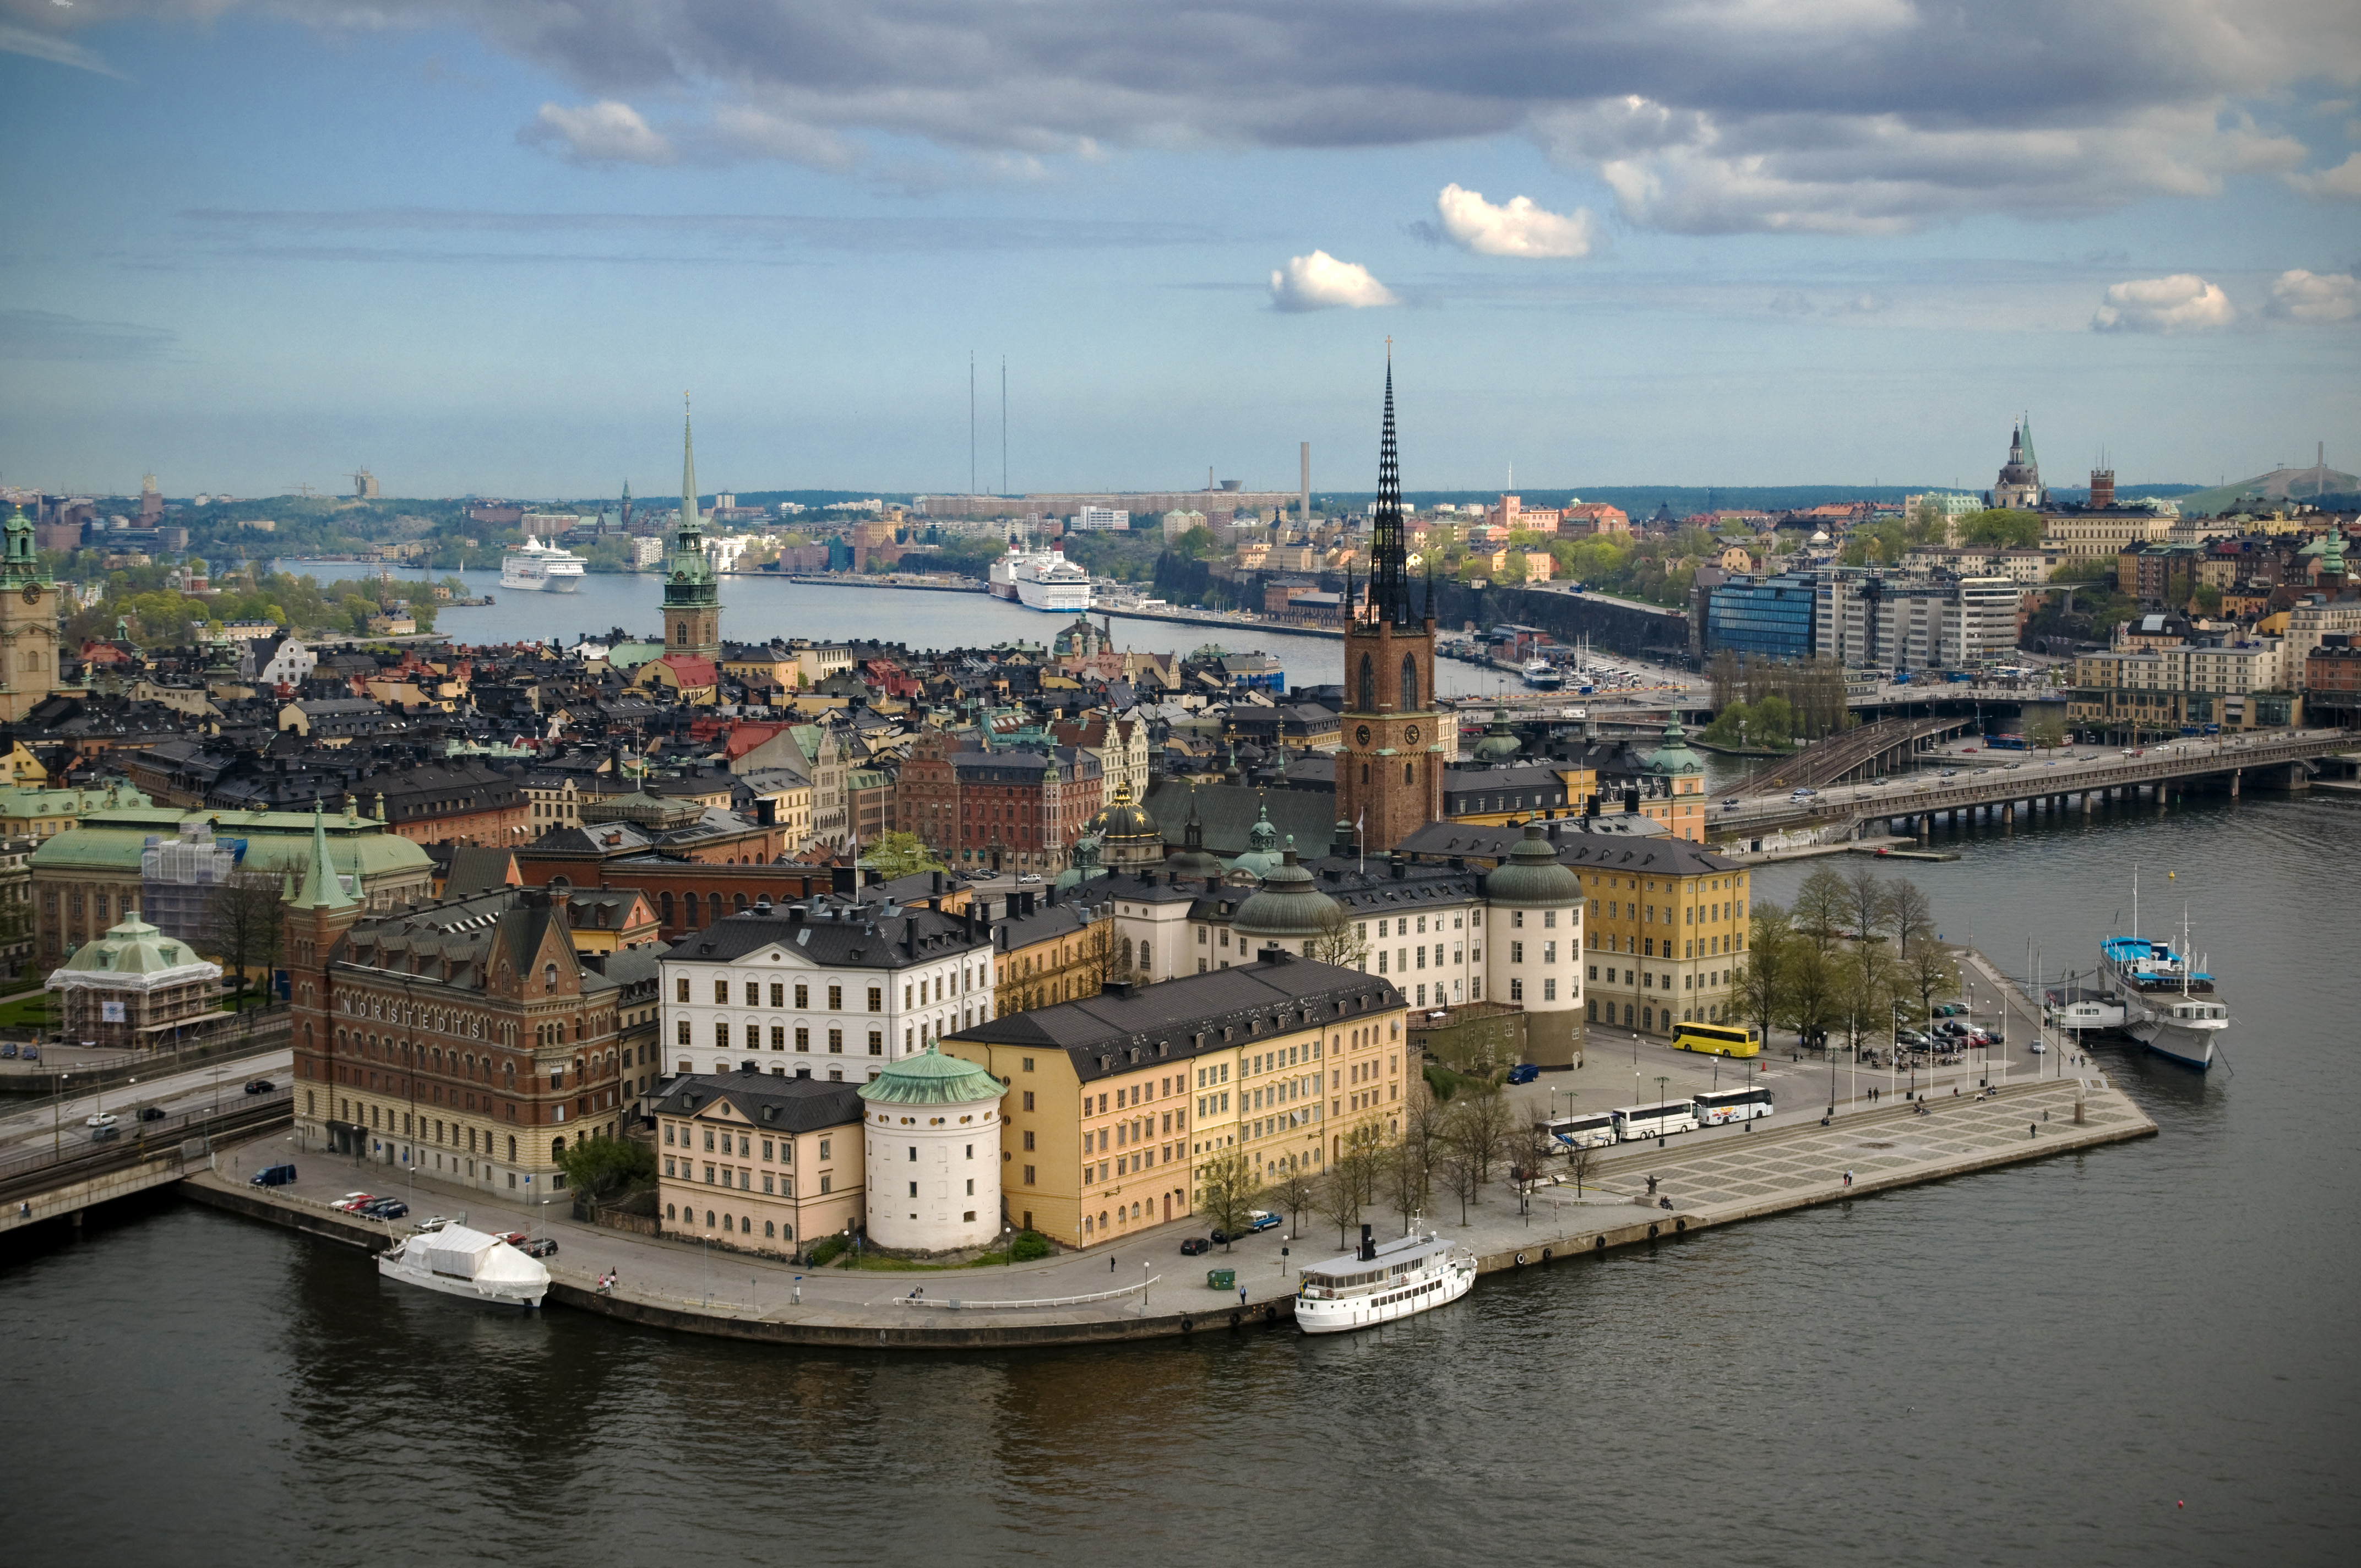 Stockholms utbud av konferenser